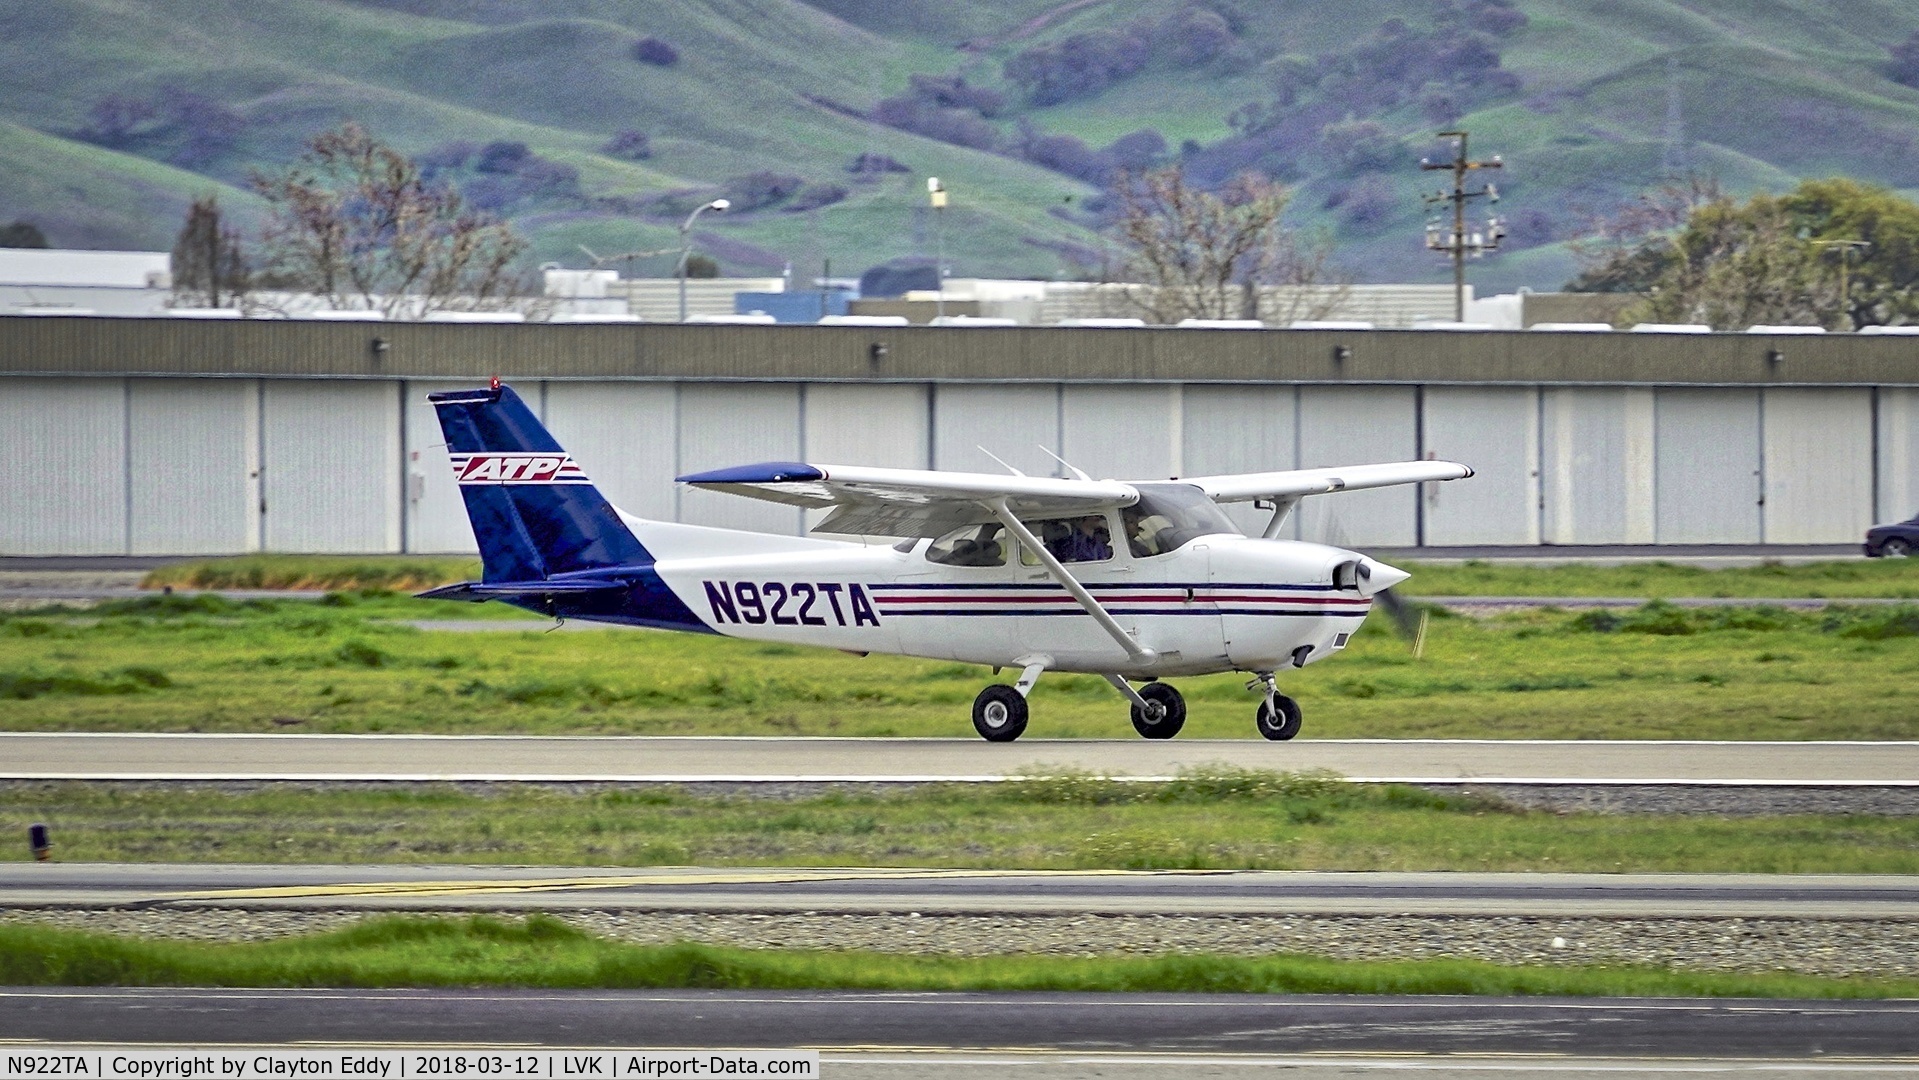 N922TA, 1997 Cessna 172R C/N 17280249, Livermore Airport California 2018.